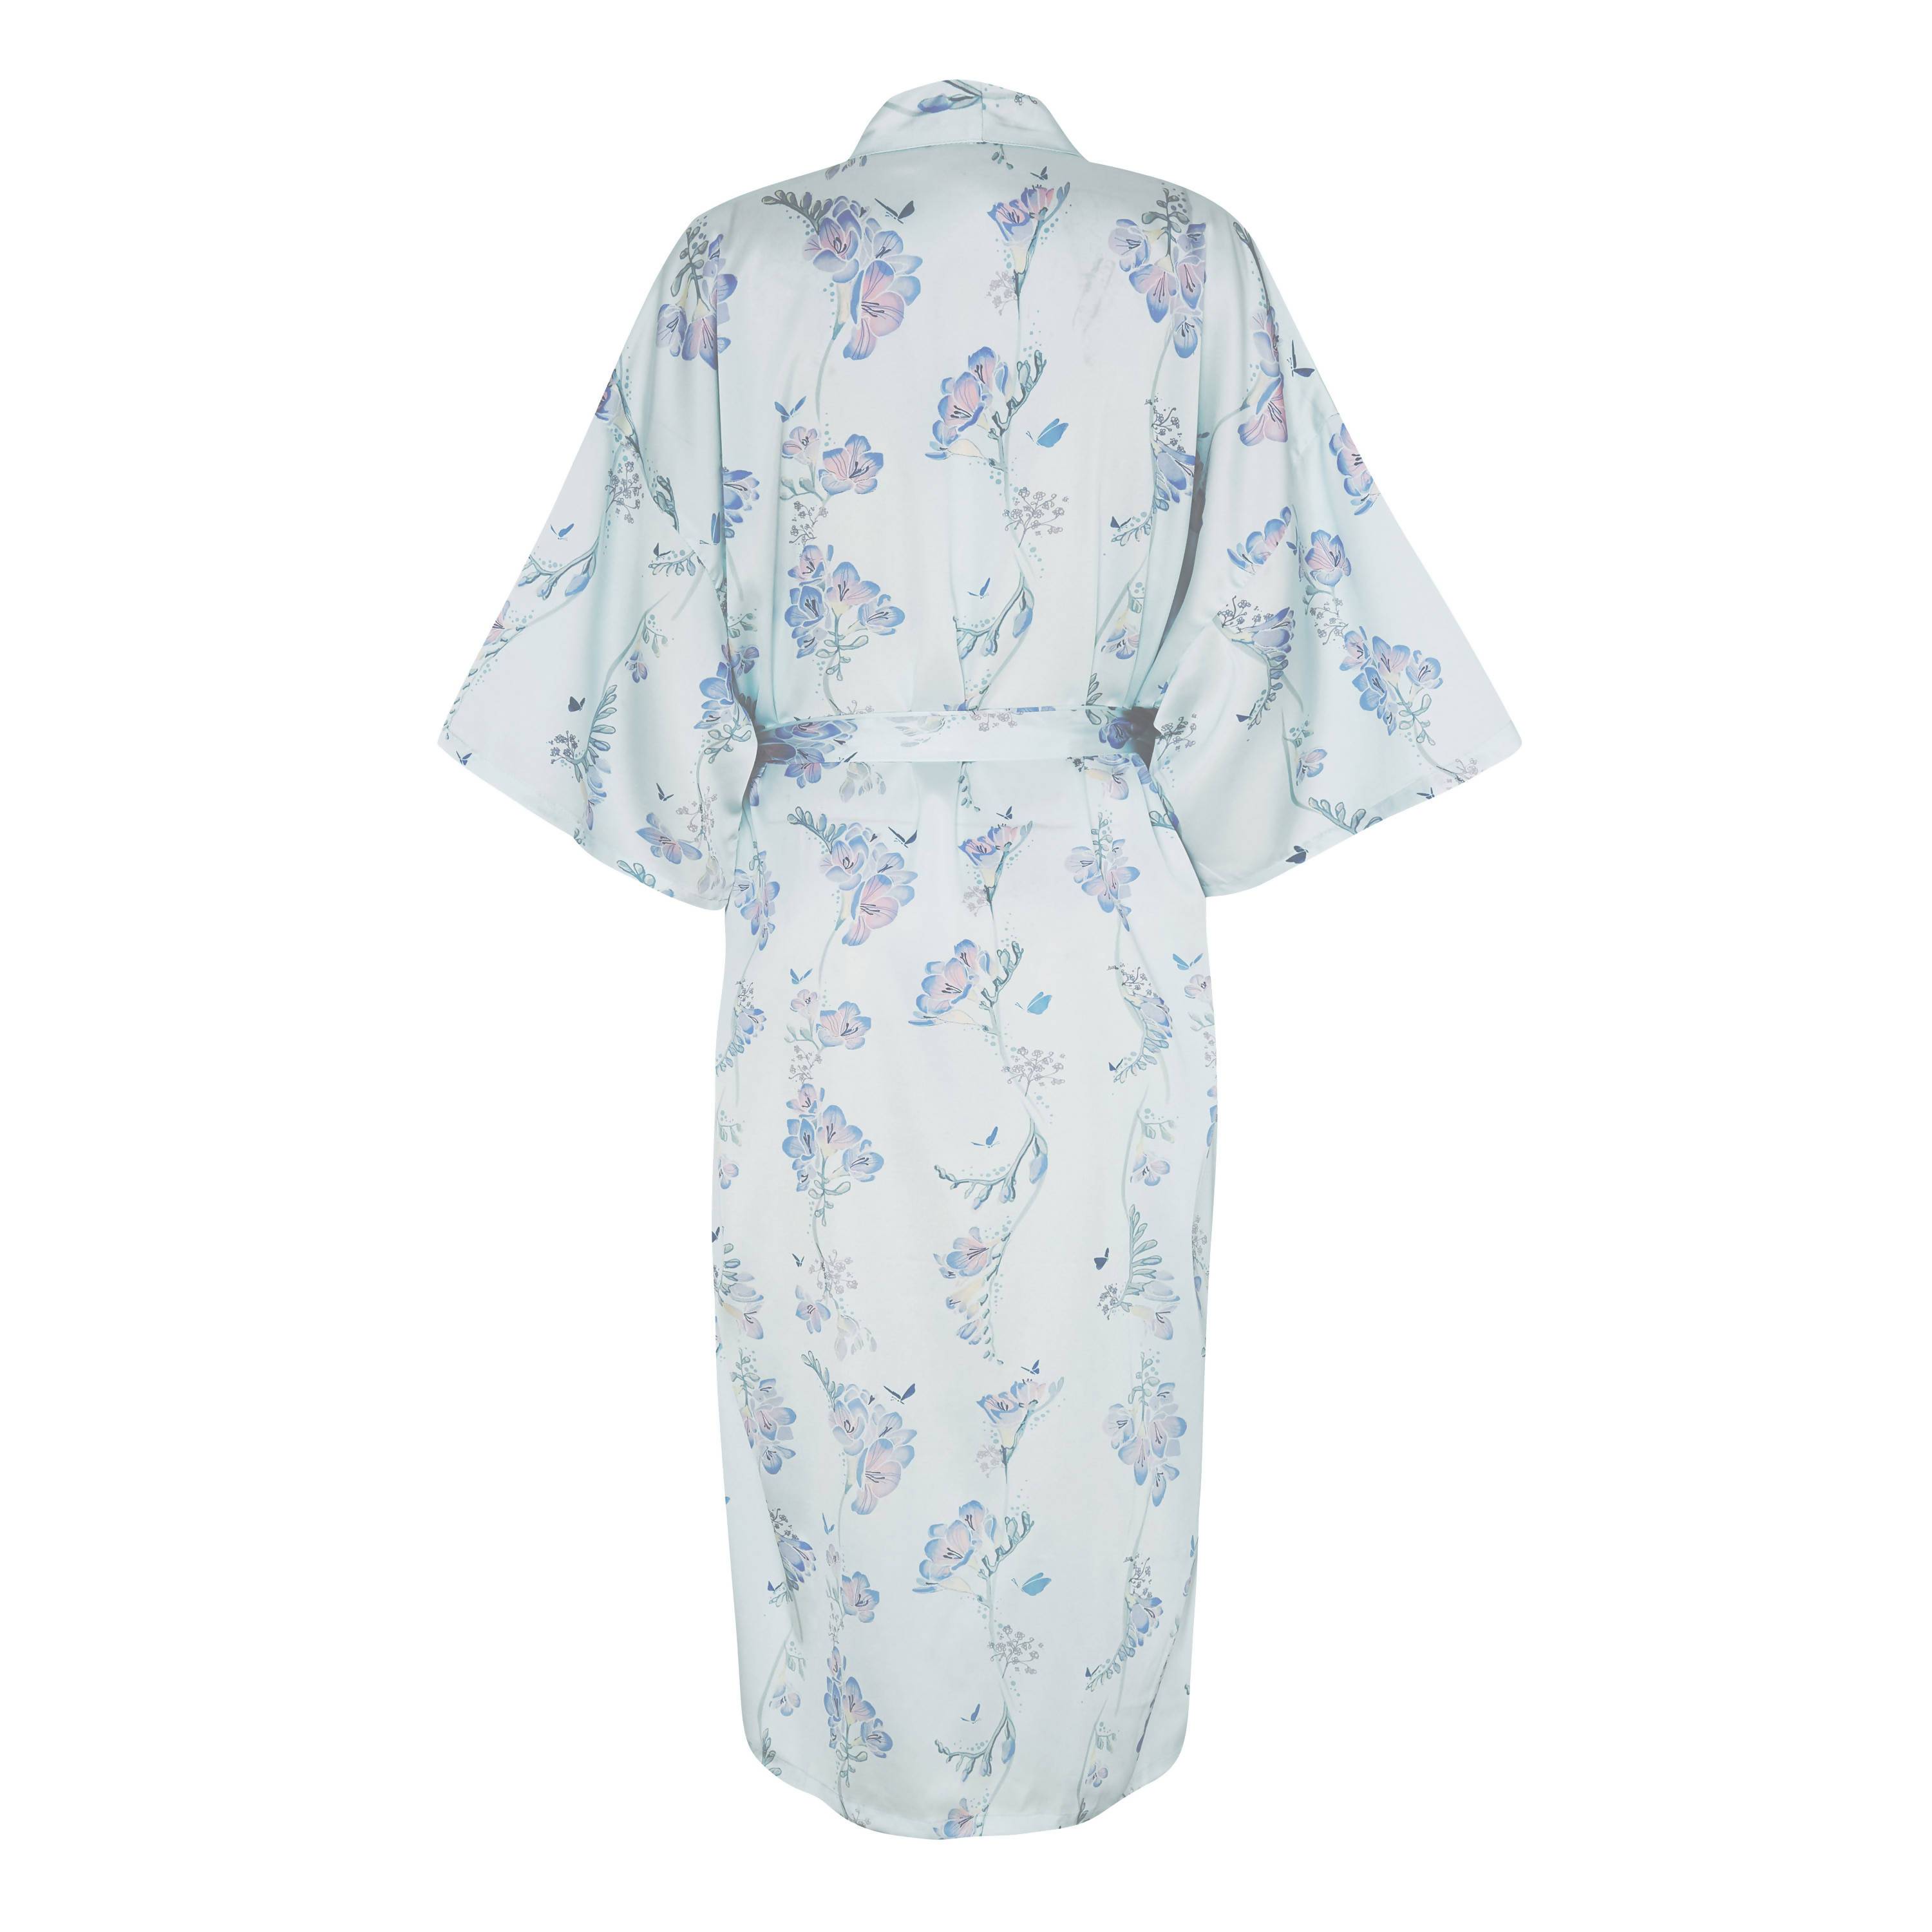 Flirty Freesias Kimono Robe (Ankle) - Sleepwear for Women - The Mariposa Collection - Naiise